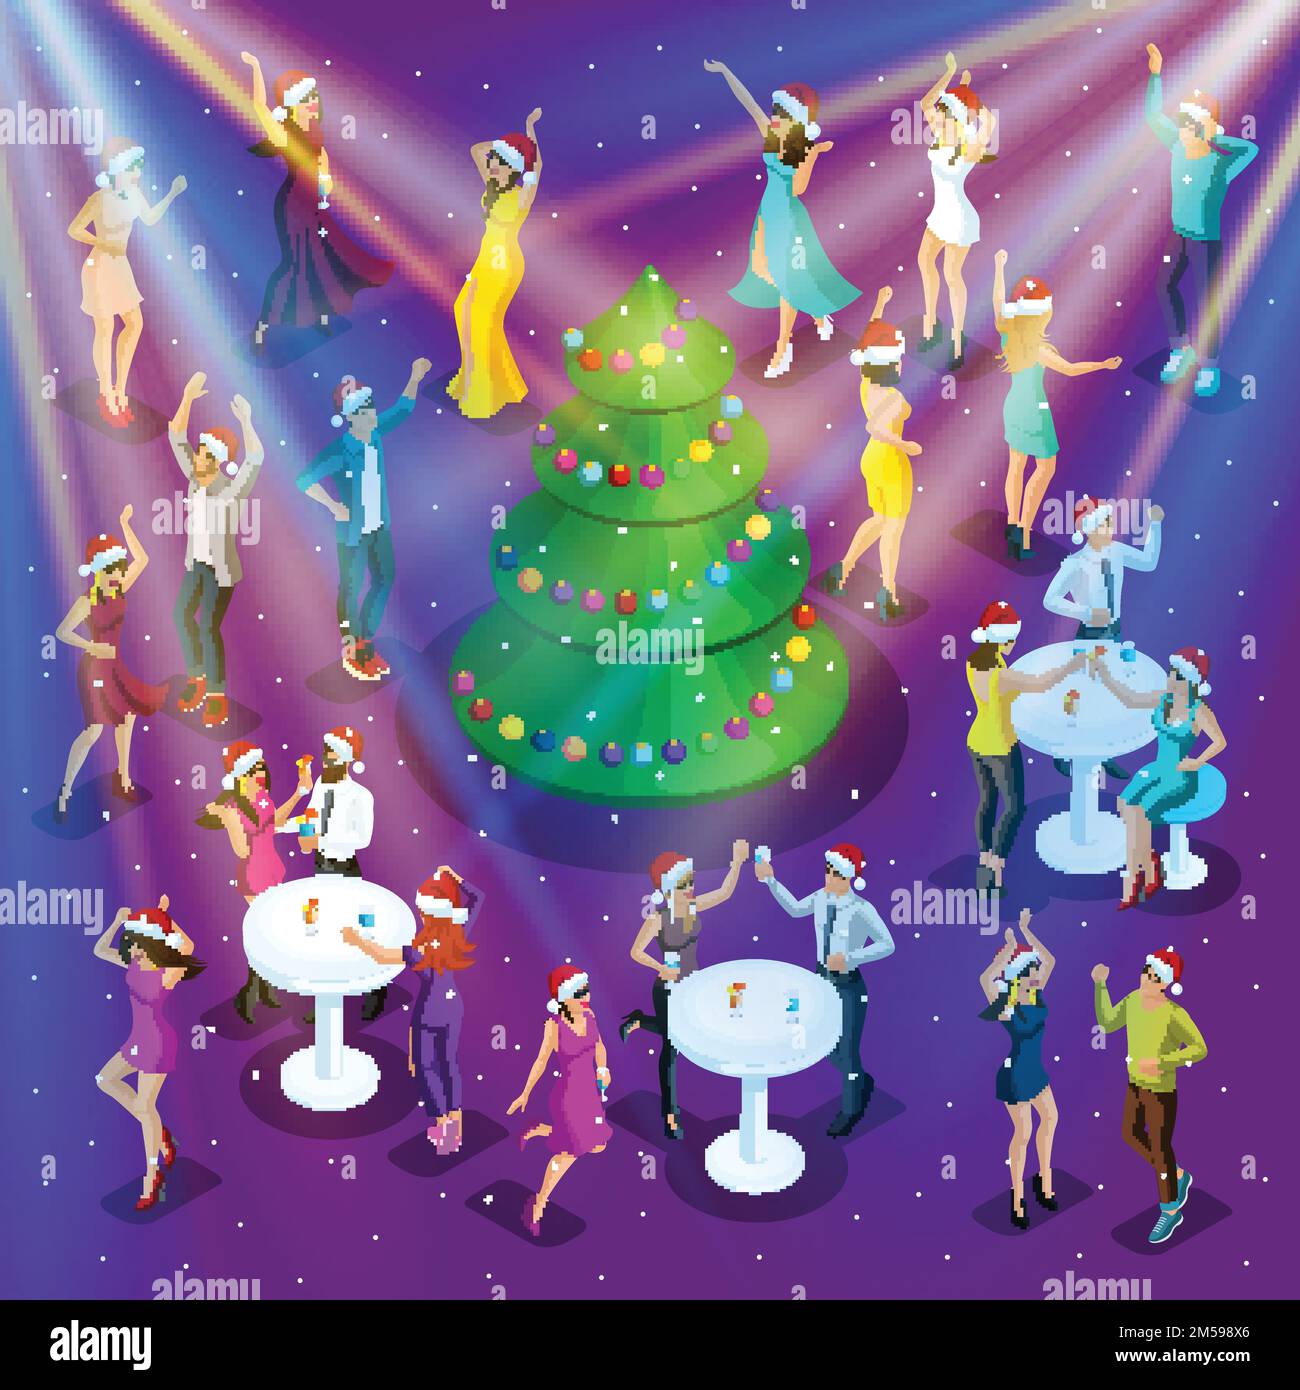 Festa isometrica di Natale, 3D danze, la felicità di un uomo e una donna stanno avendo divertimento, albero di Natale festivo nel centro, festa aziendale-0 Illustrazione Vettoriale